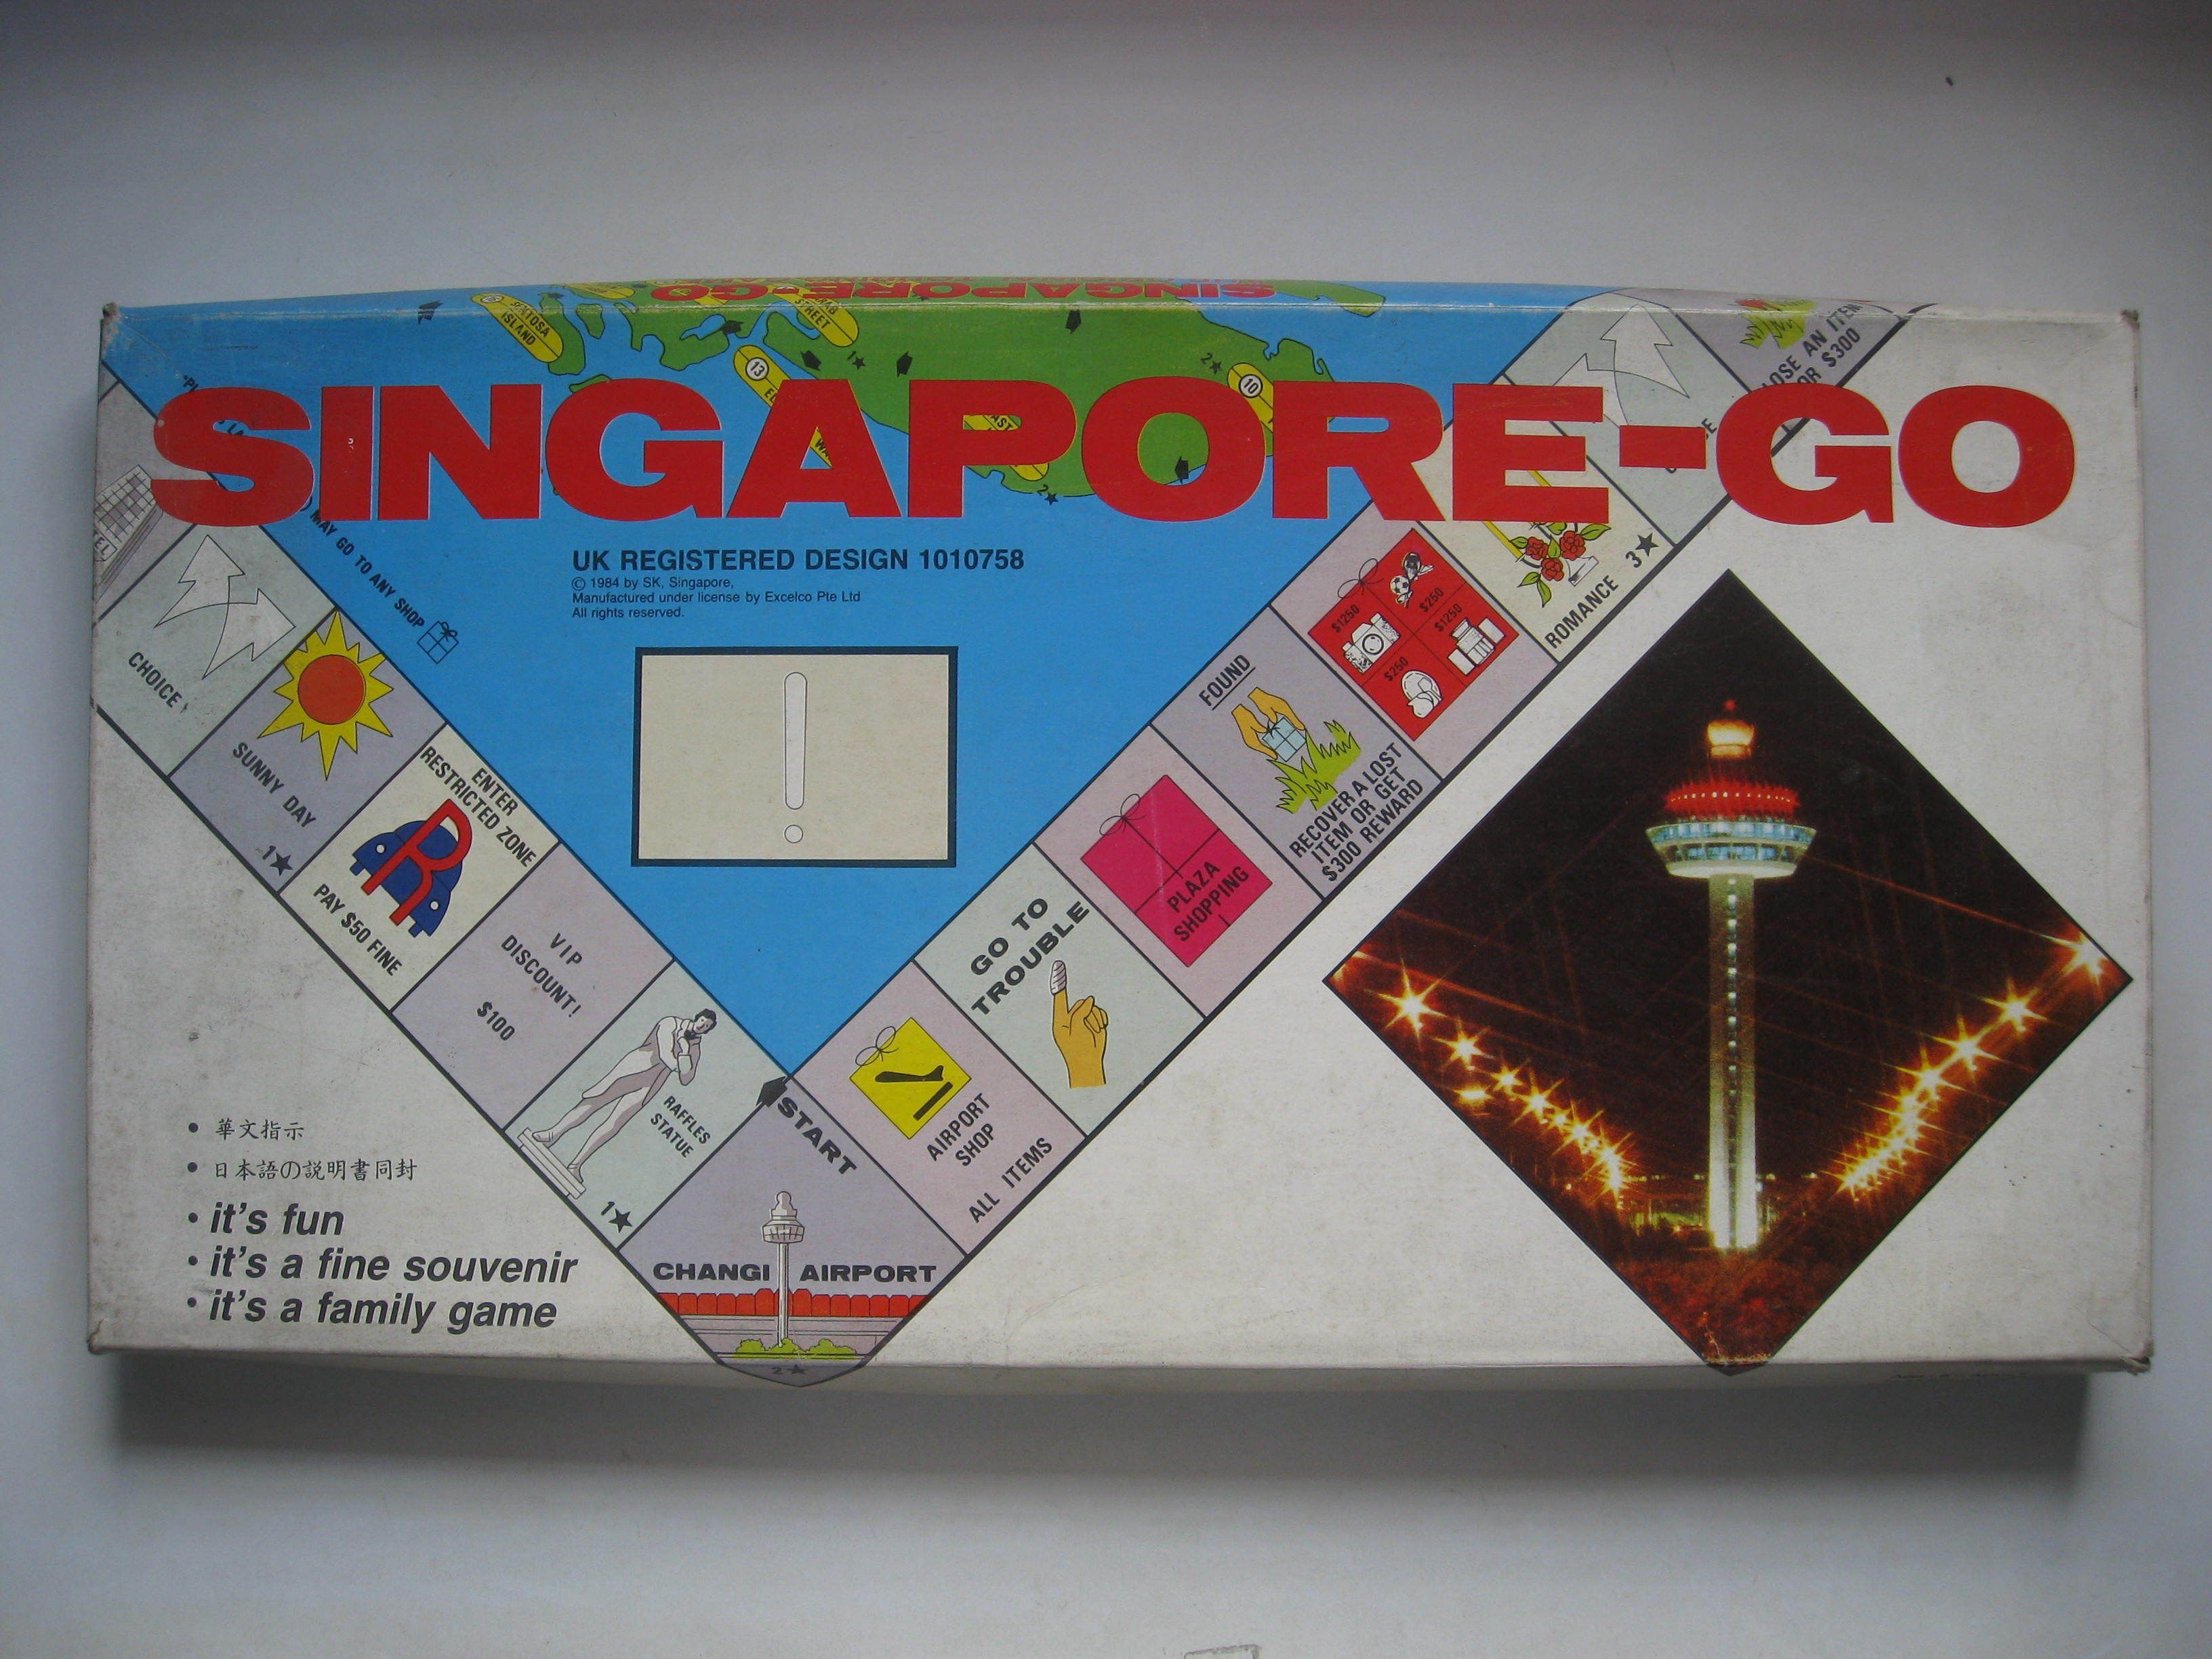 Singapore-Go